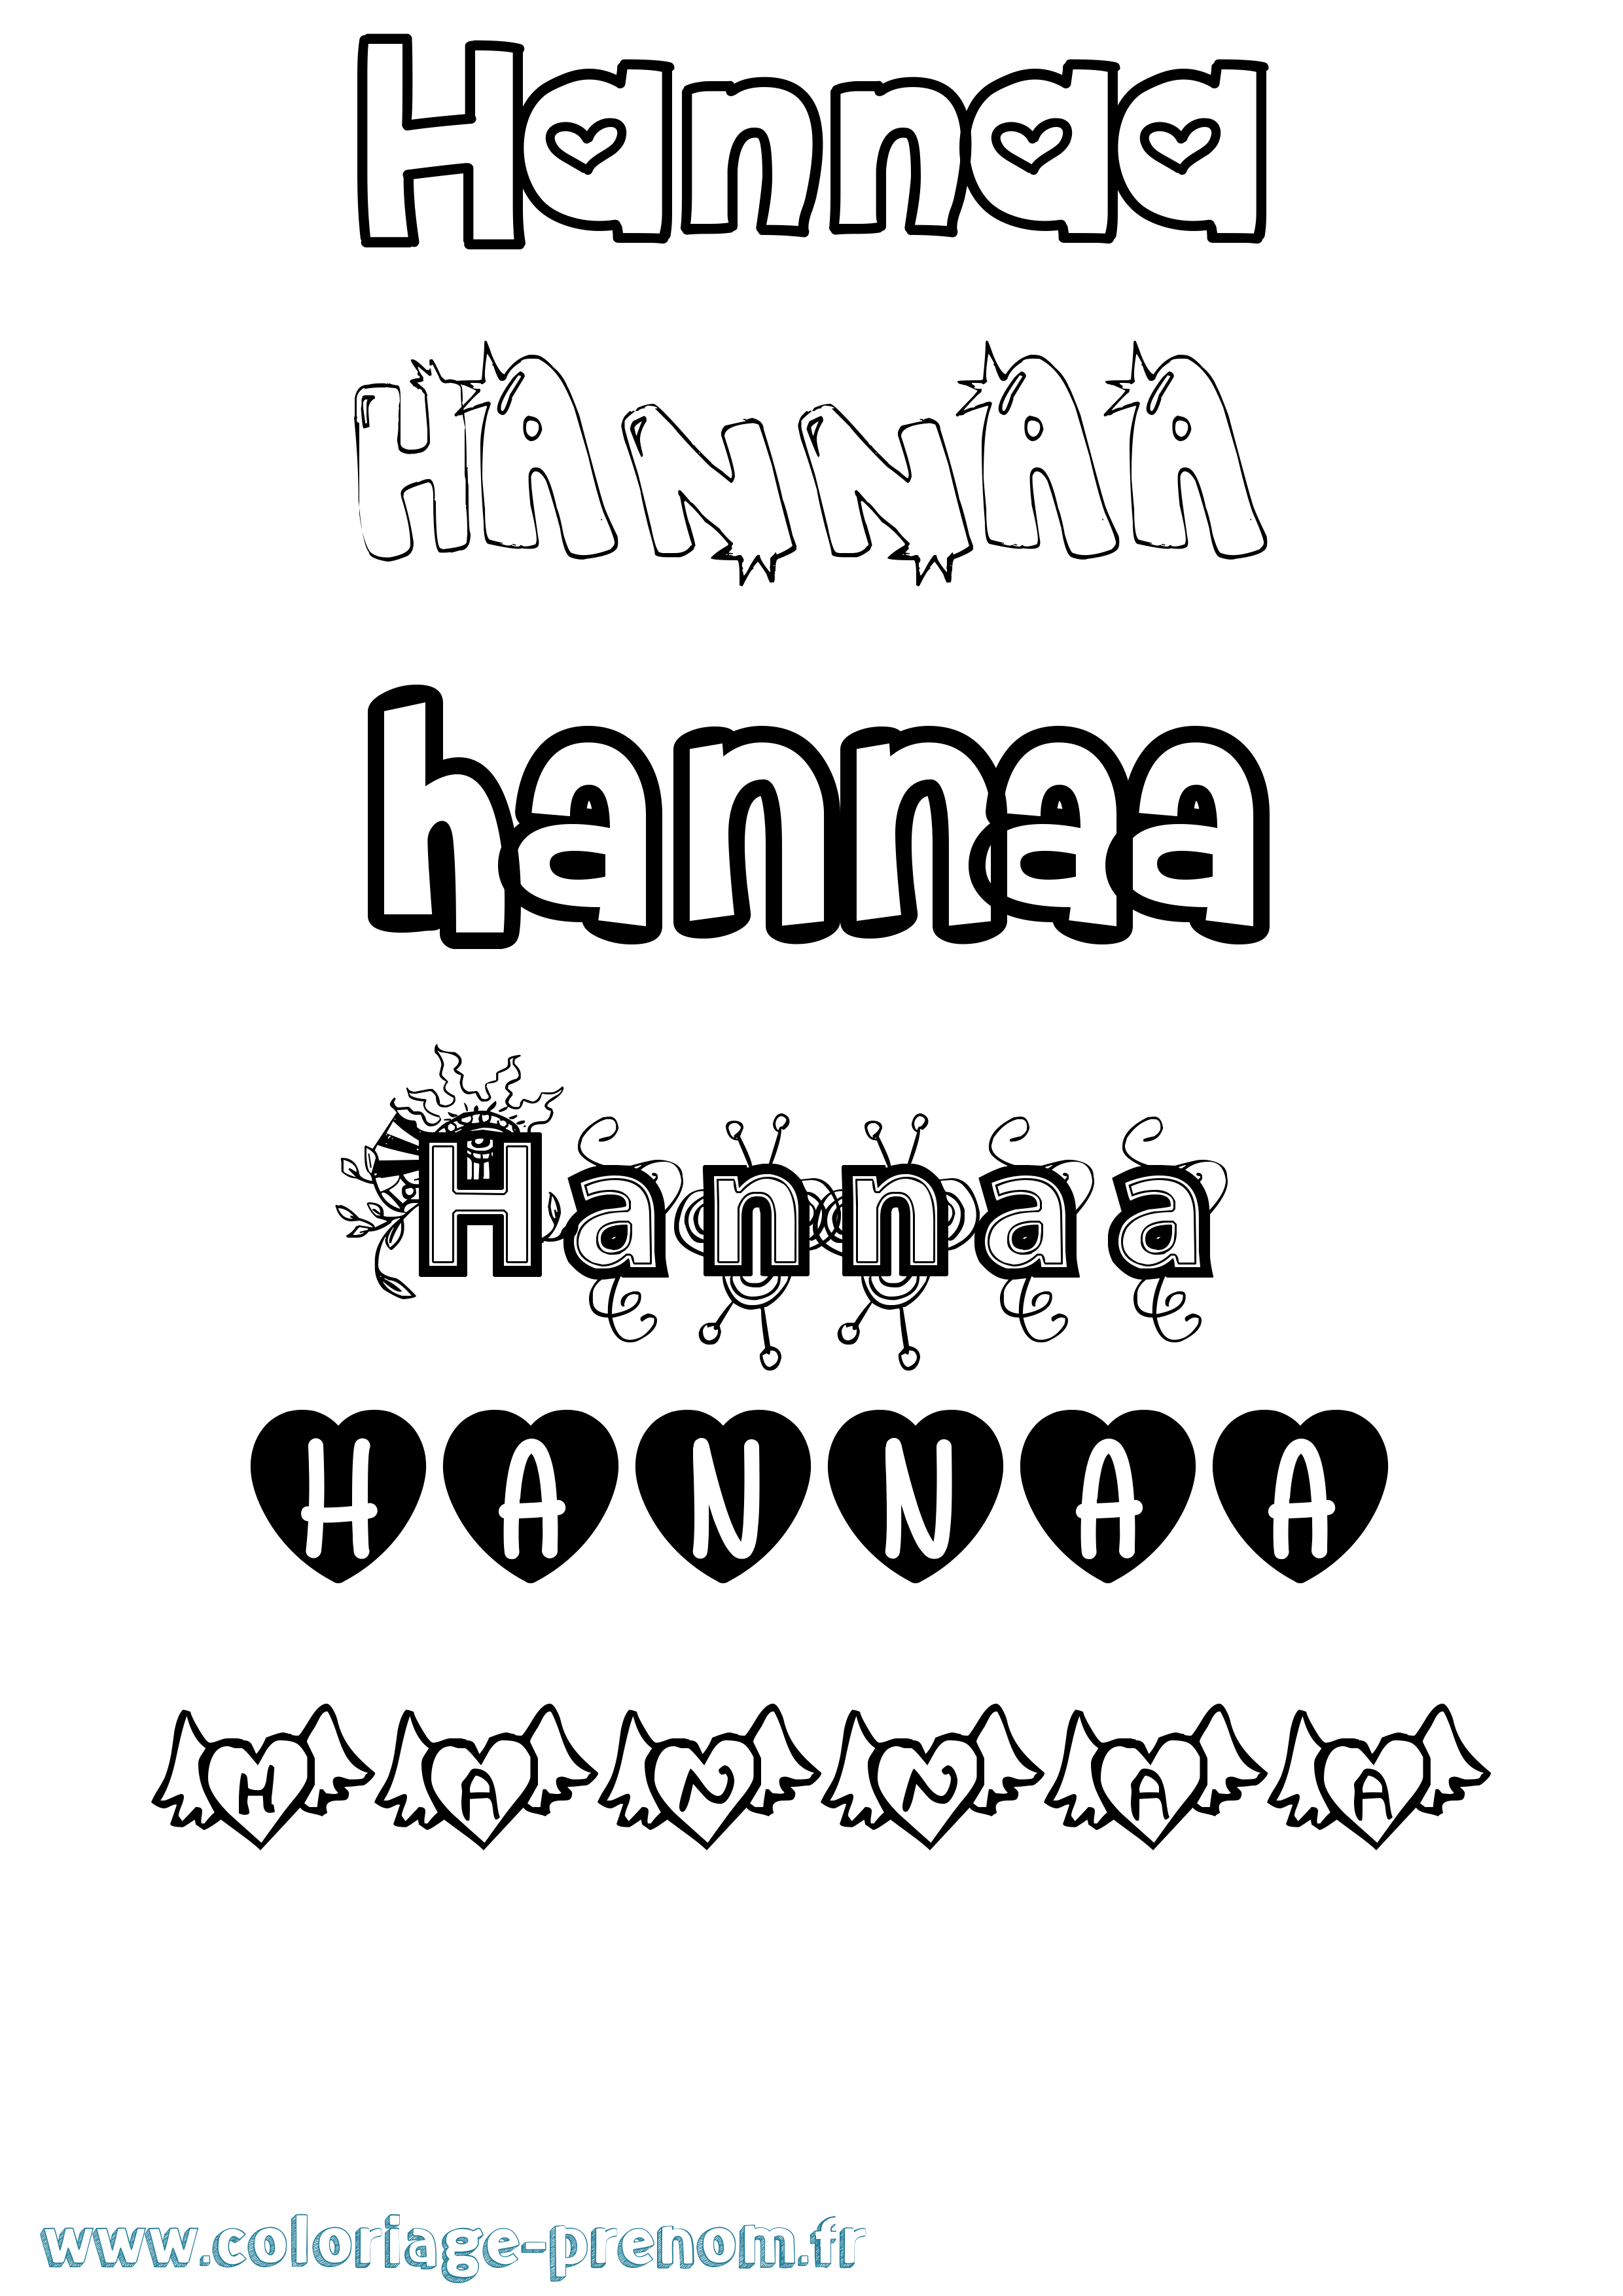 Coloriage prénom Hannaa Girly